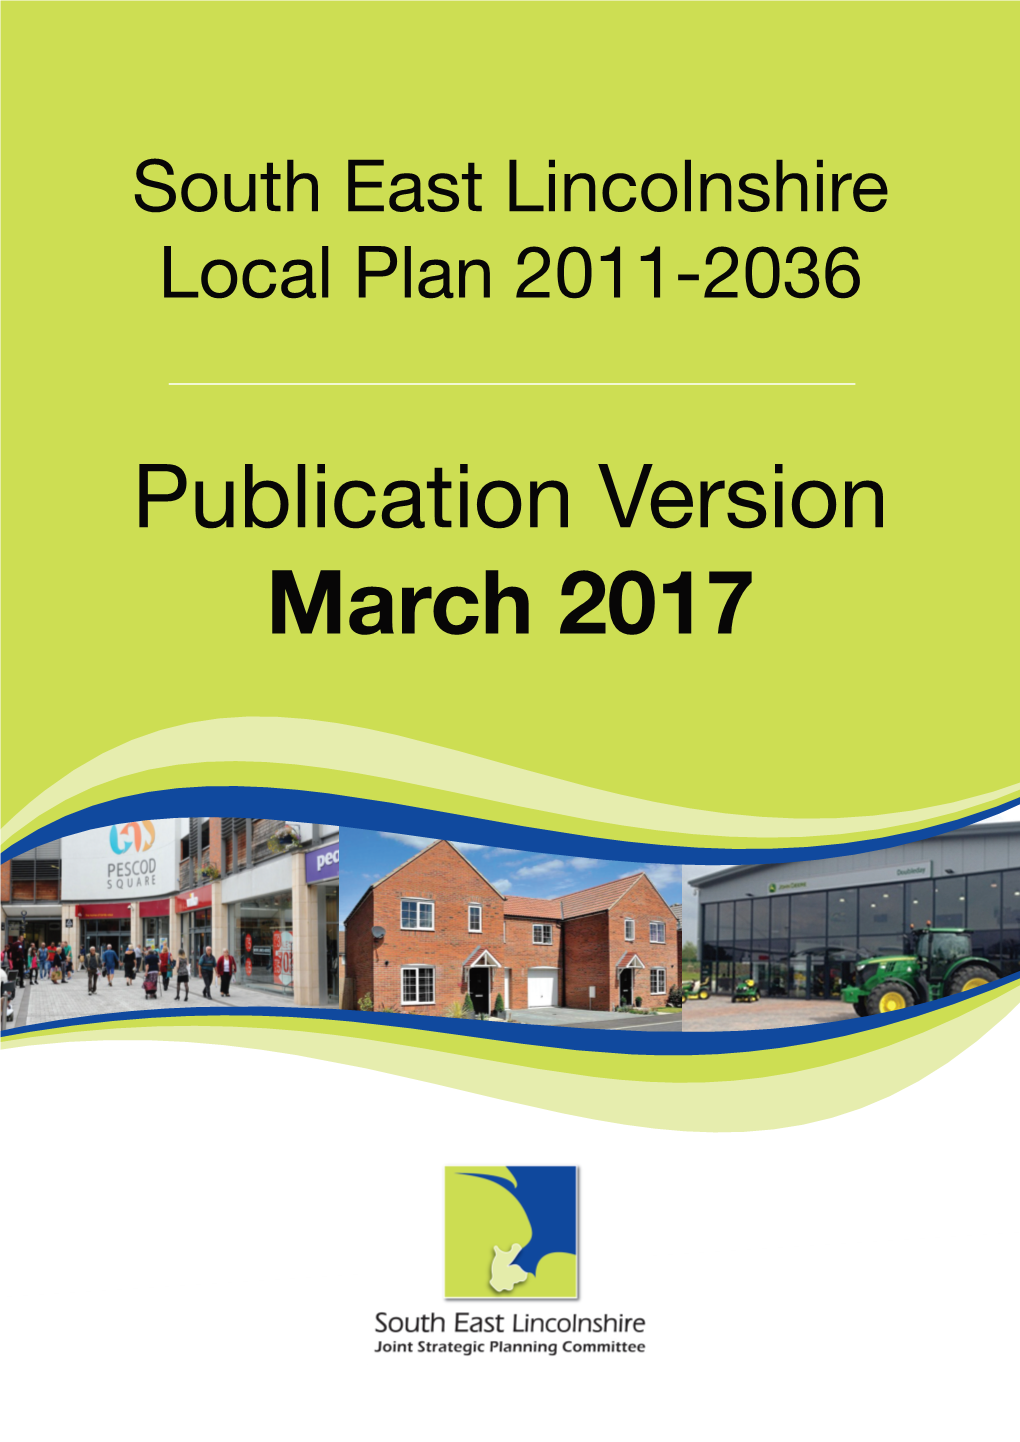 Publication Version March 2017